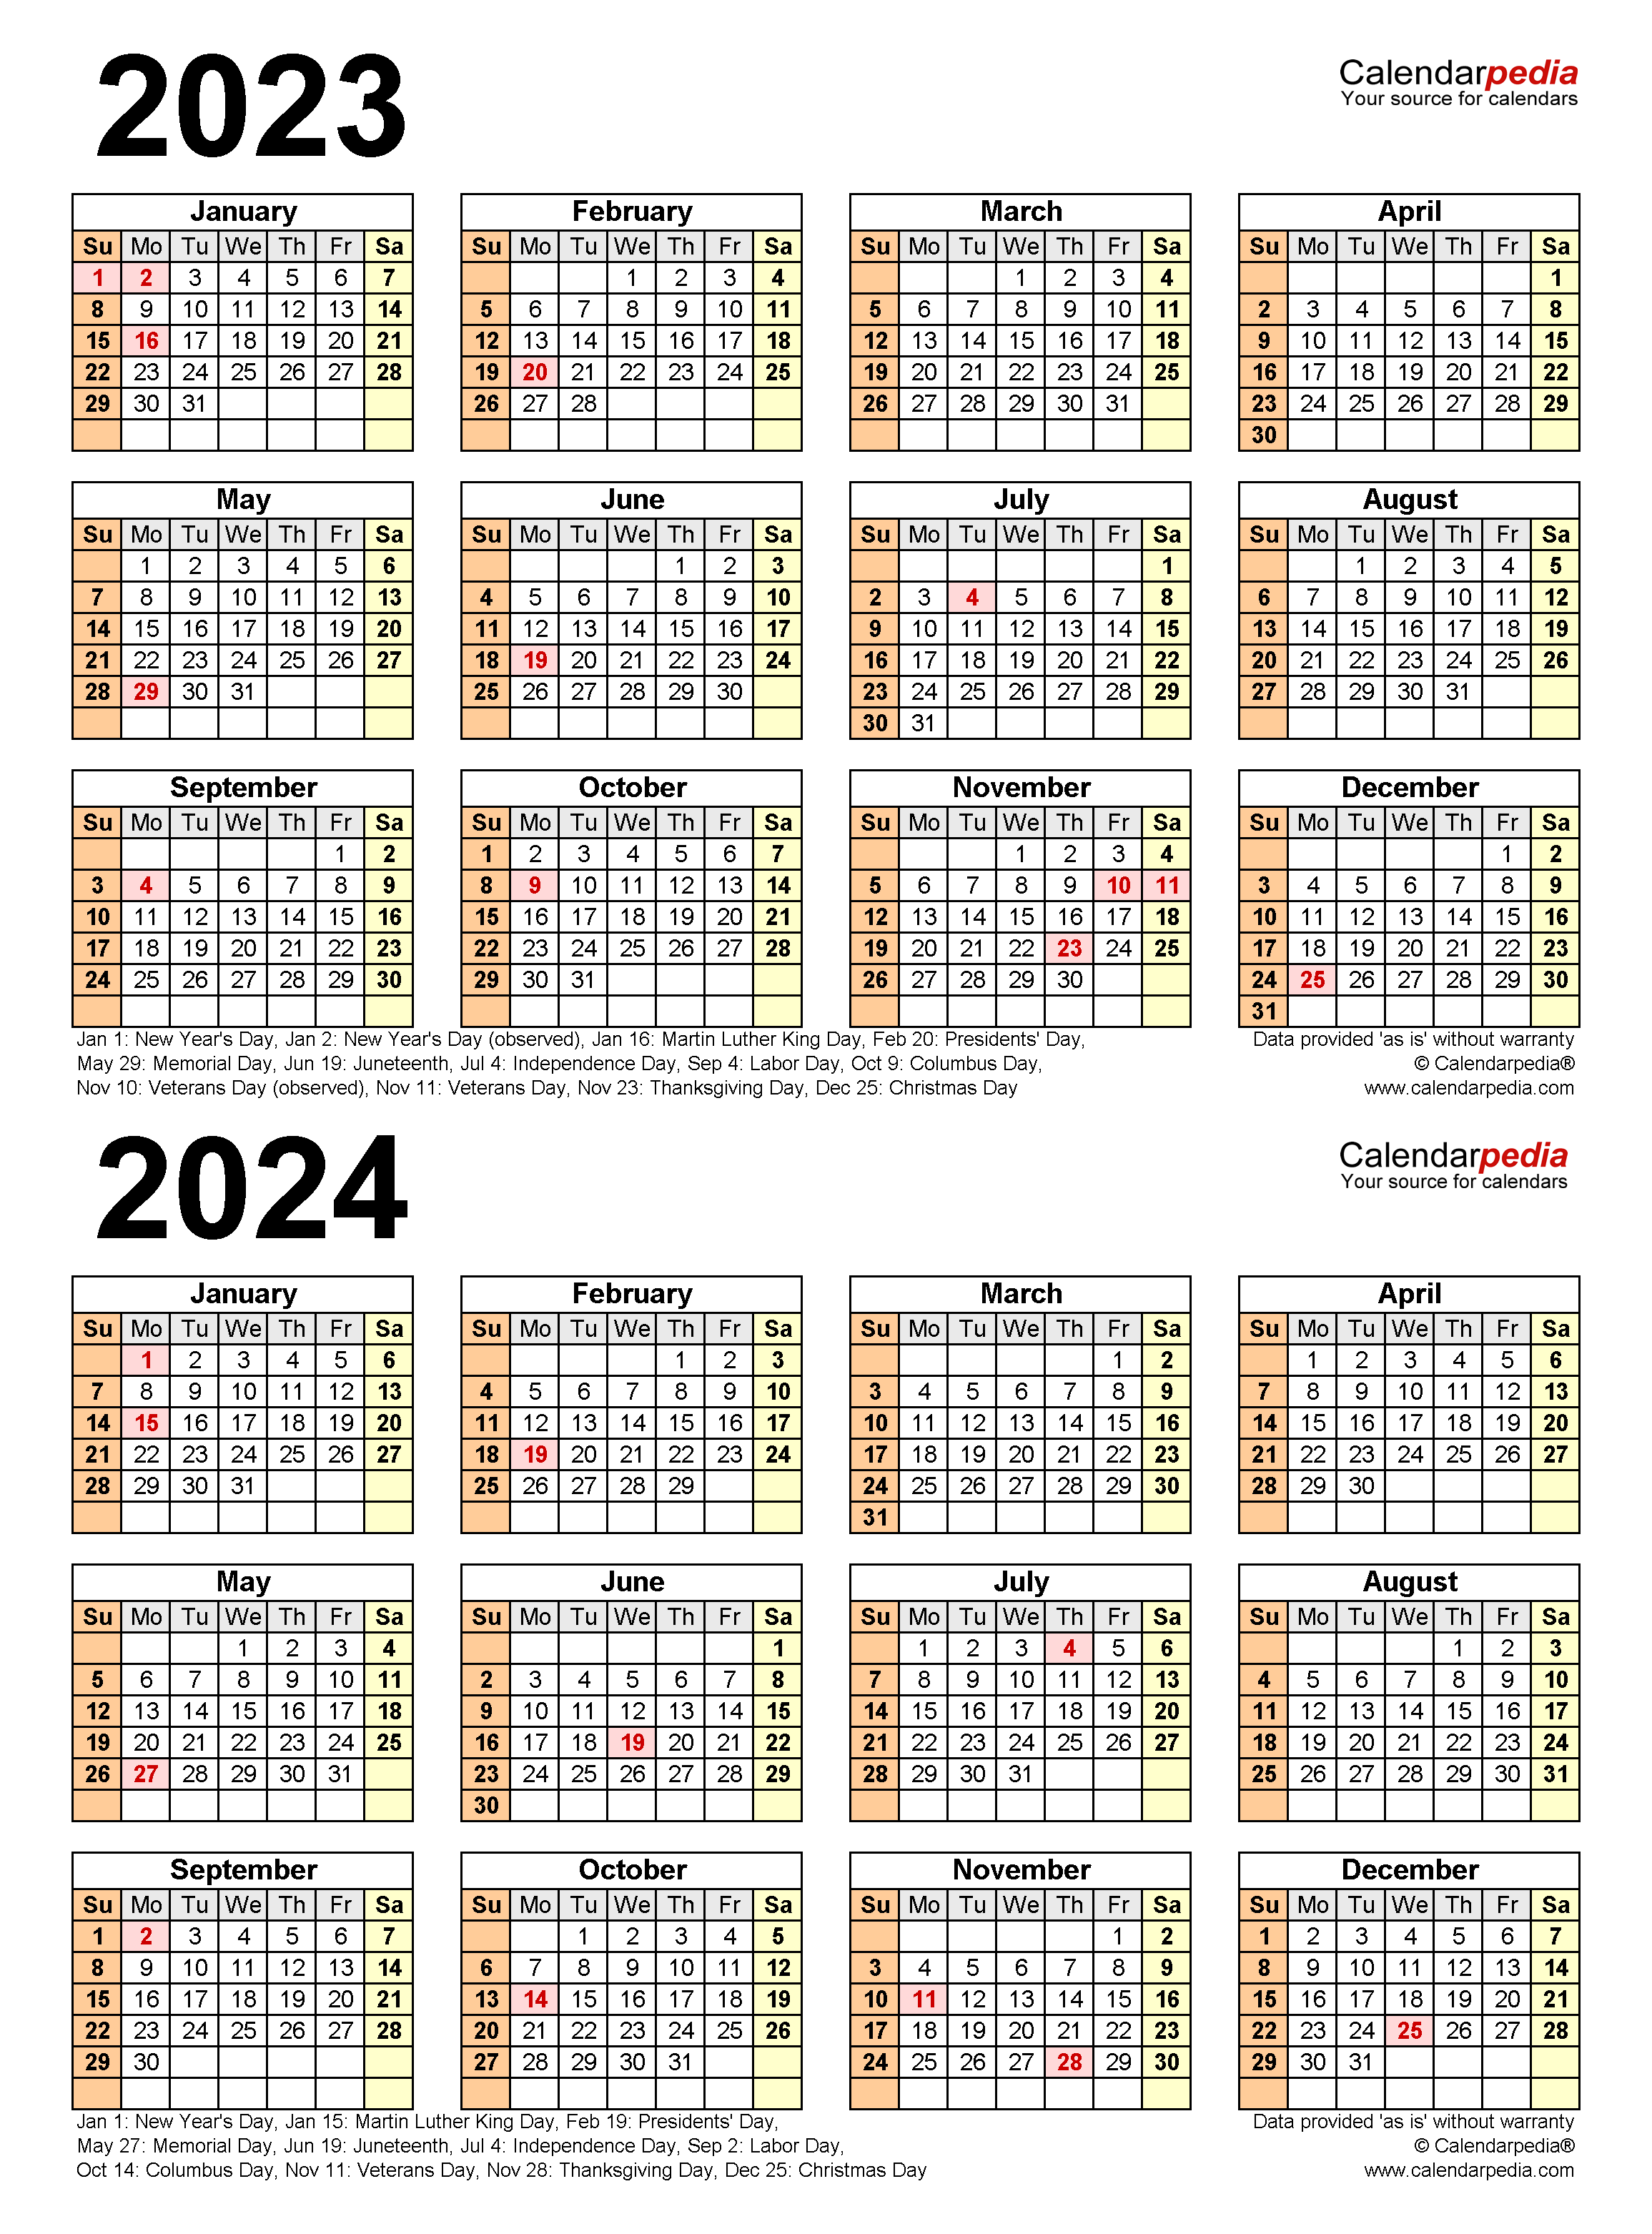 Famous Gusd Calendar 2023 2024 Photos Calendar Ideas 2023